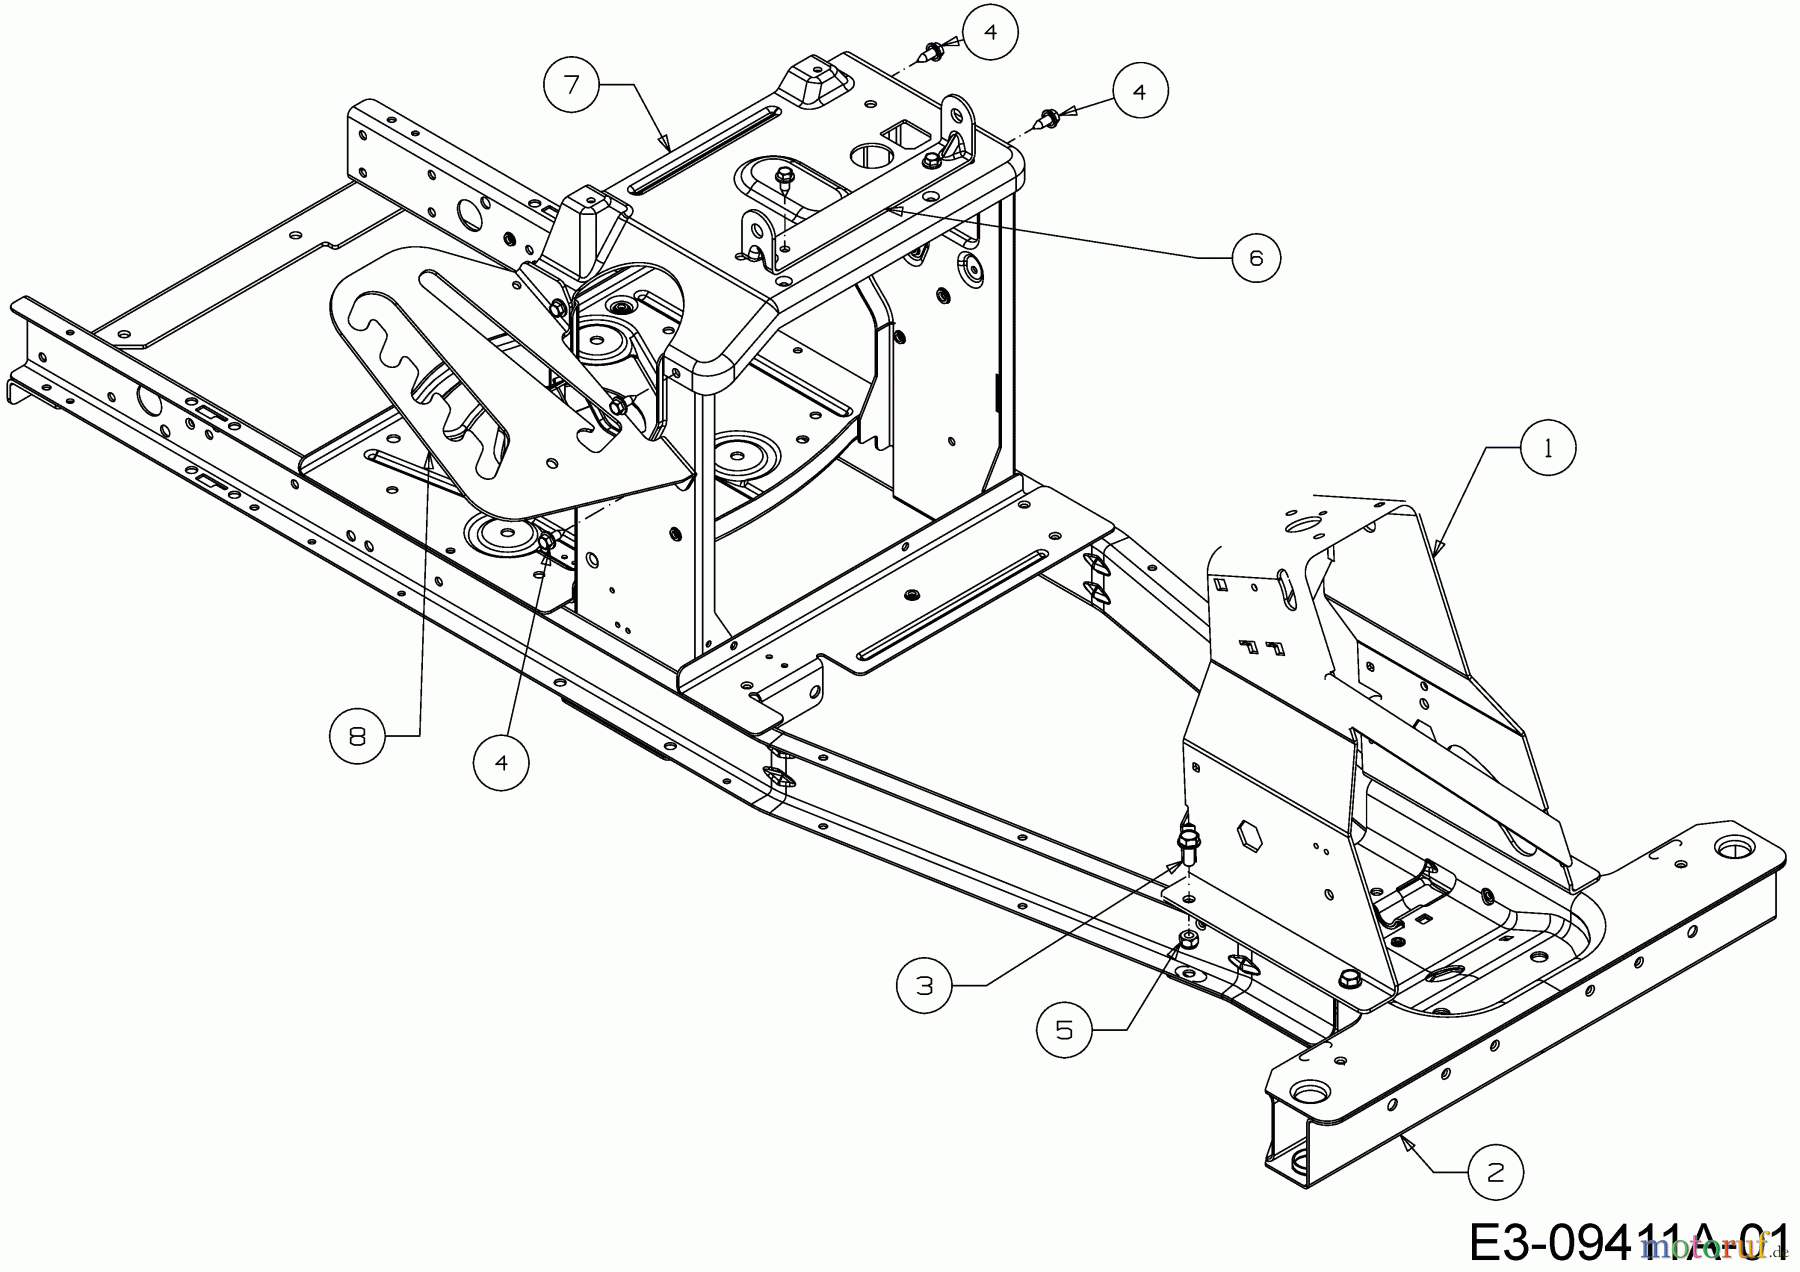  WOLF-Garten Expert Rasentraktoren Scooter Pro Hydro 13A221HD650  (2016) Rahmen